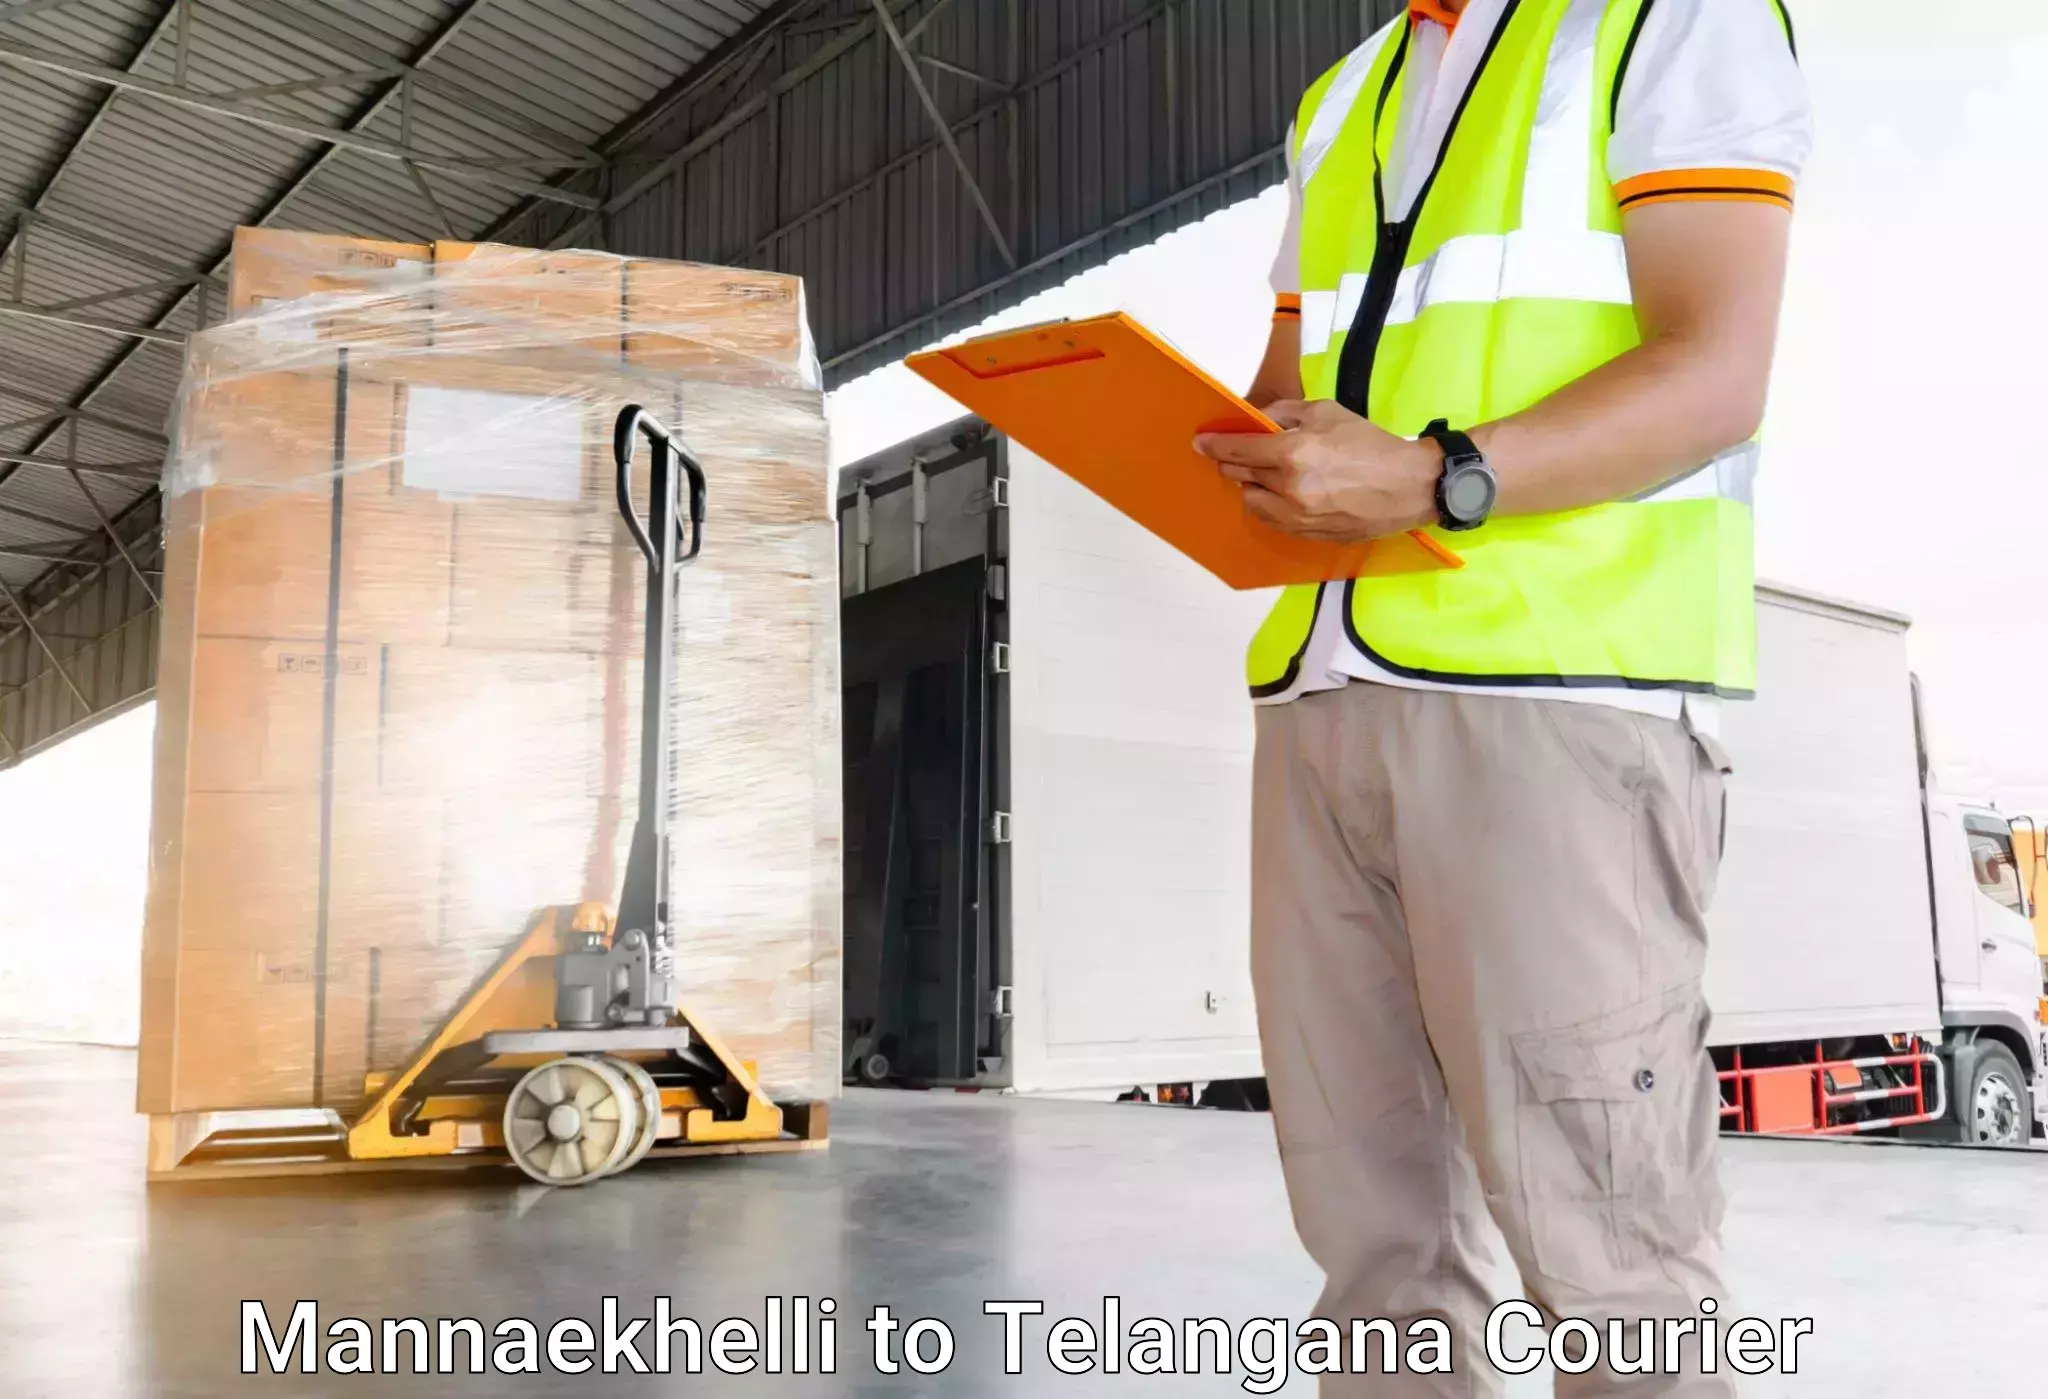 Global baggage shipping Mannaekhelli to Kodimial